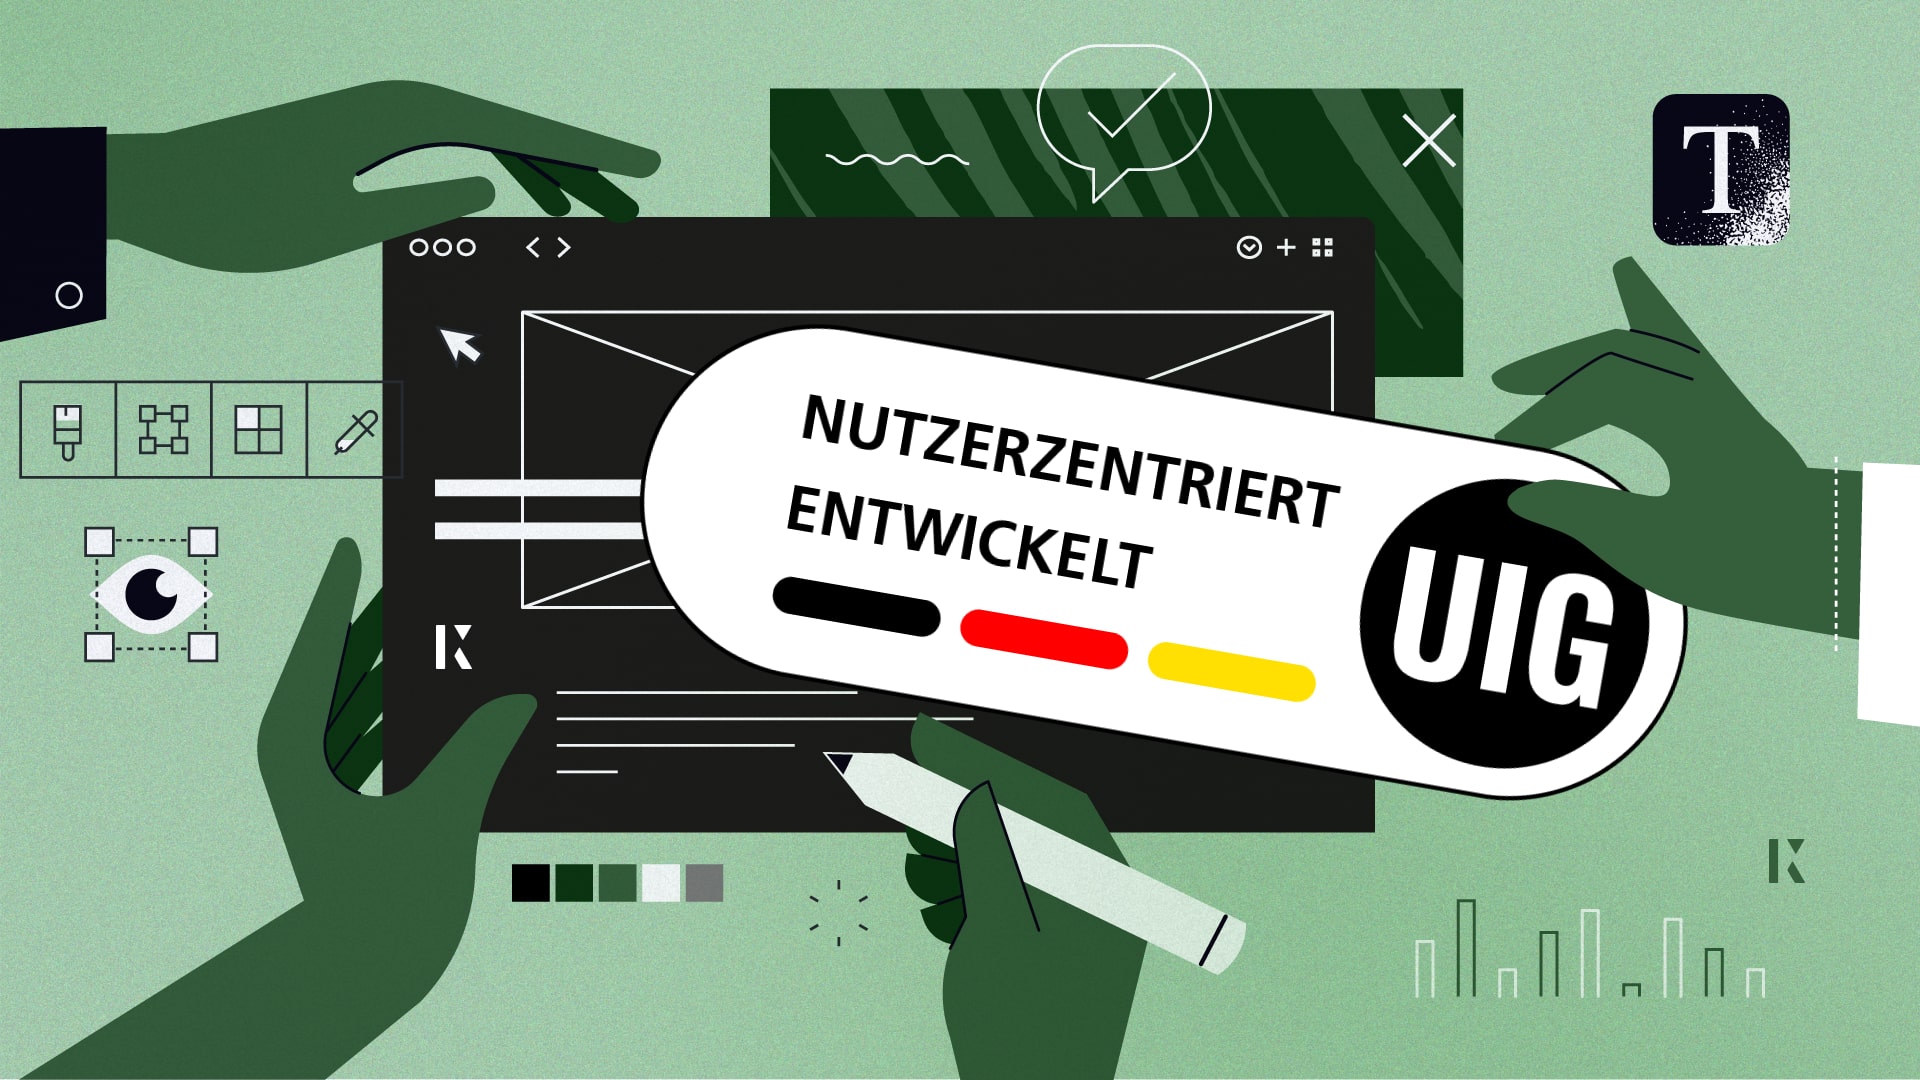 kernpuls zertifiziert Unternehmen für das neue Siegel „Nutzerzentriert entwickelt“ des gemeinnützigen Vereins Usability & User Experience in Germany (UIG) e.V.